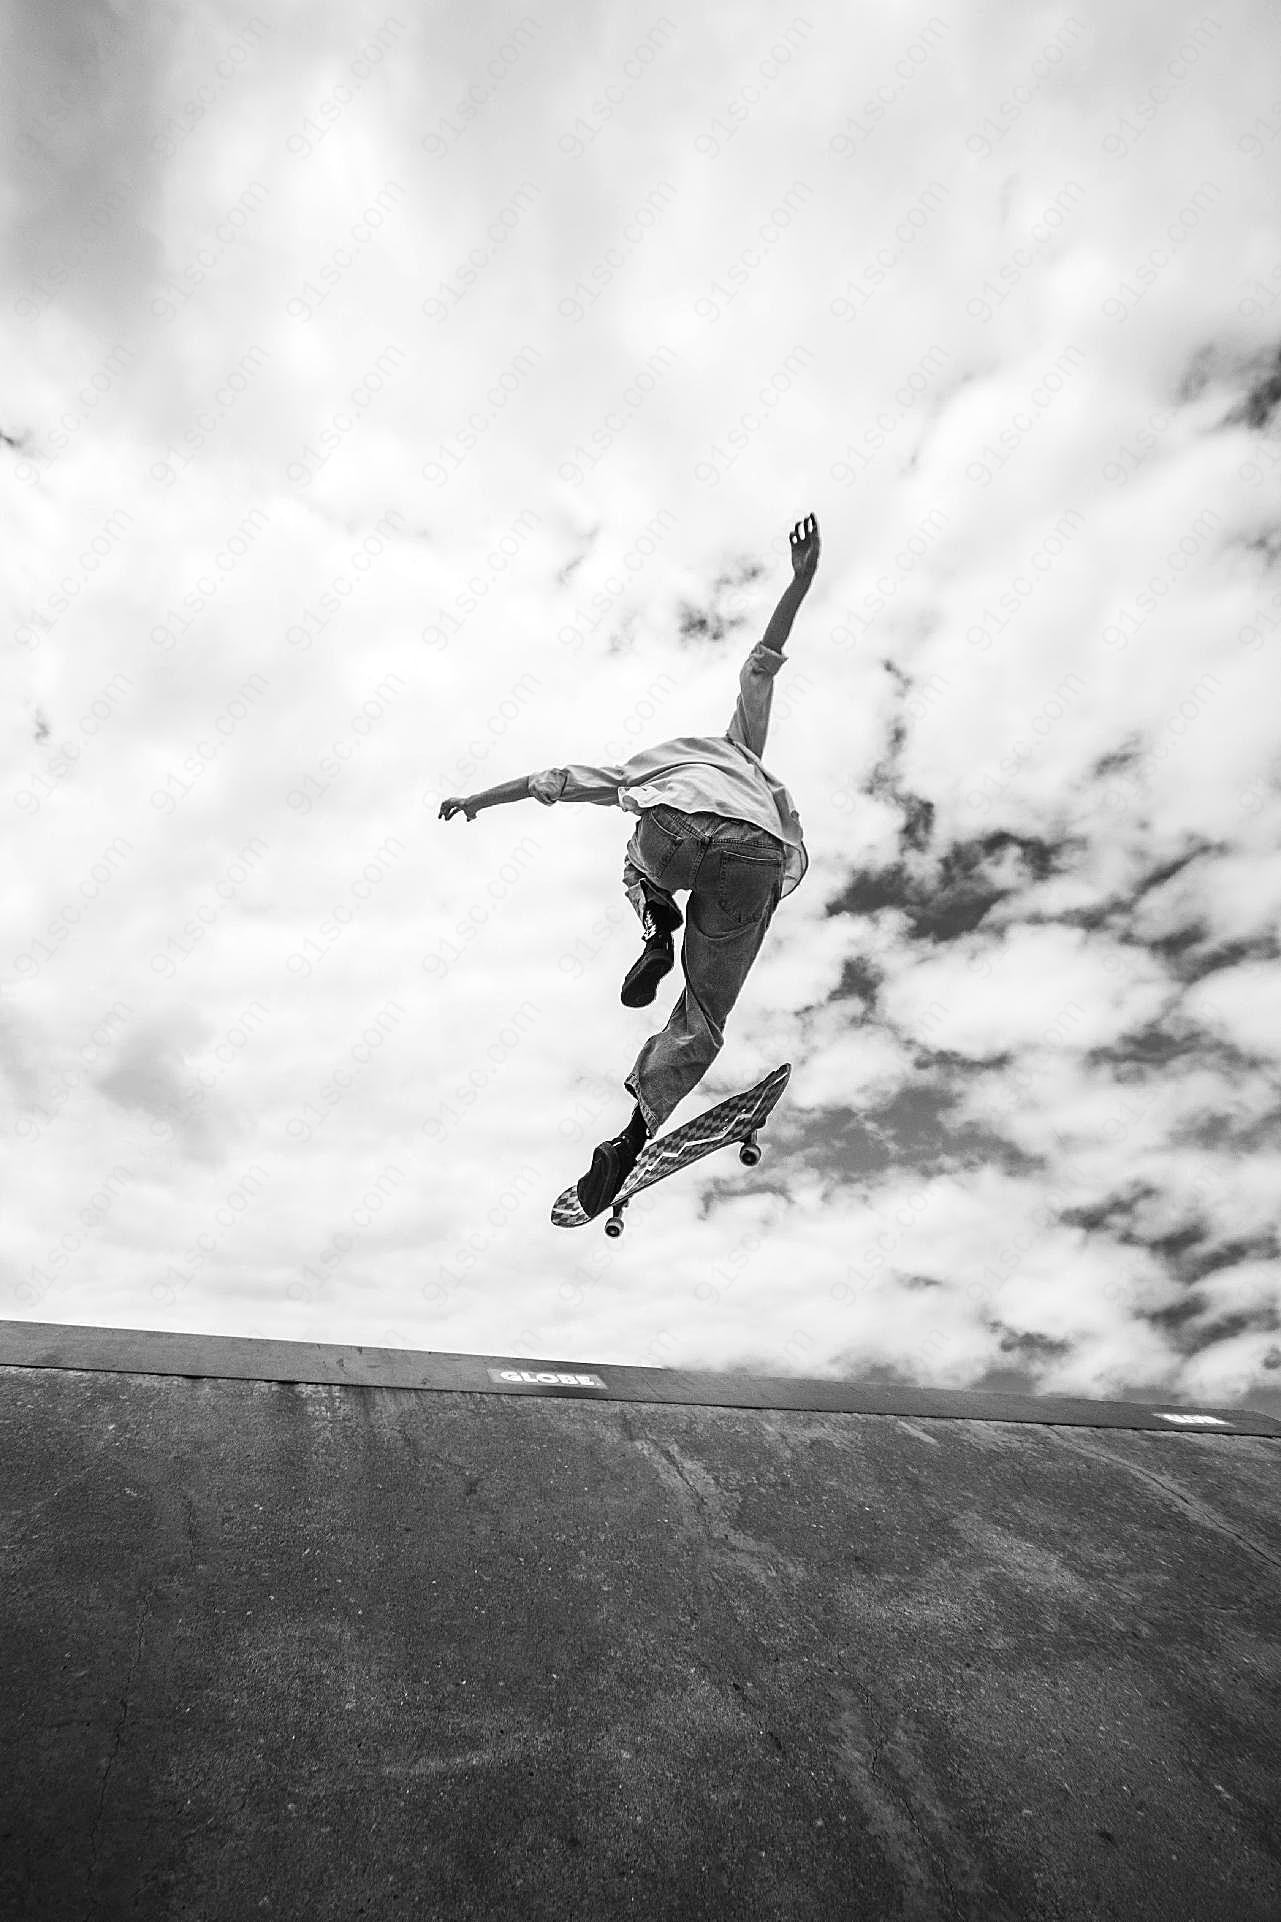 空中滑板跳跃动作图片文化